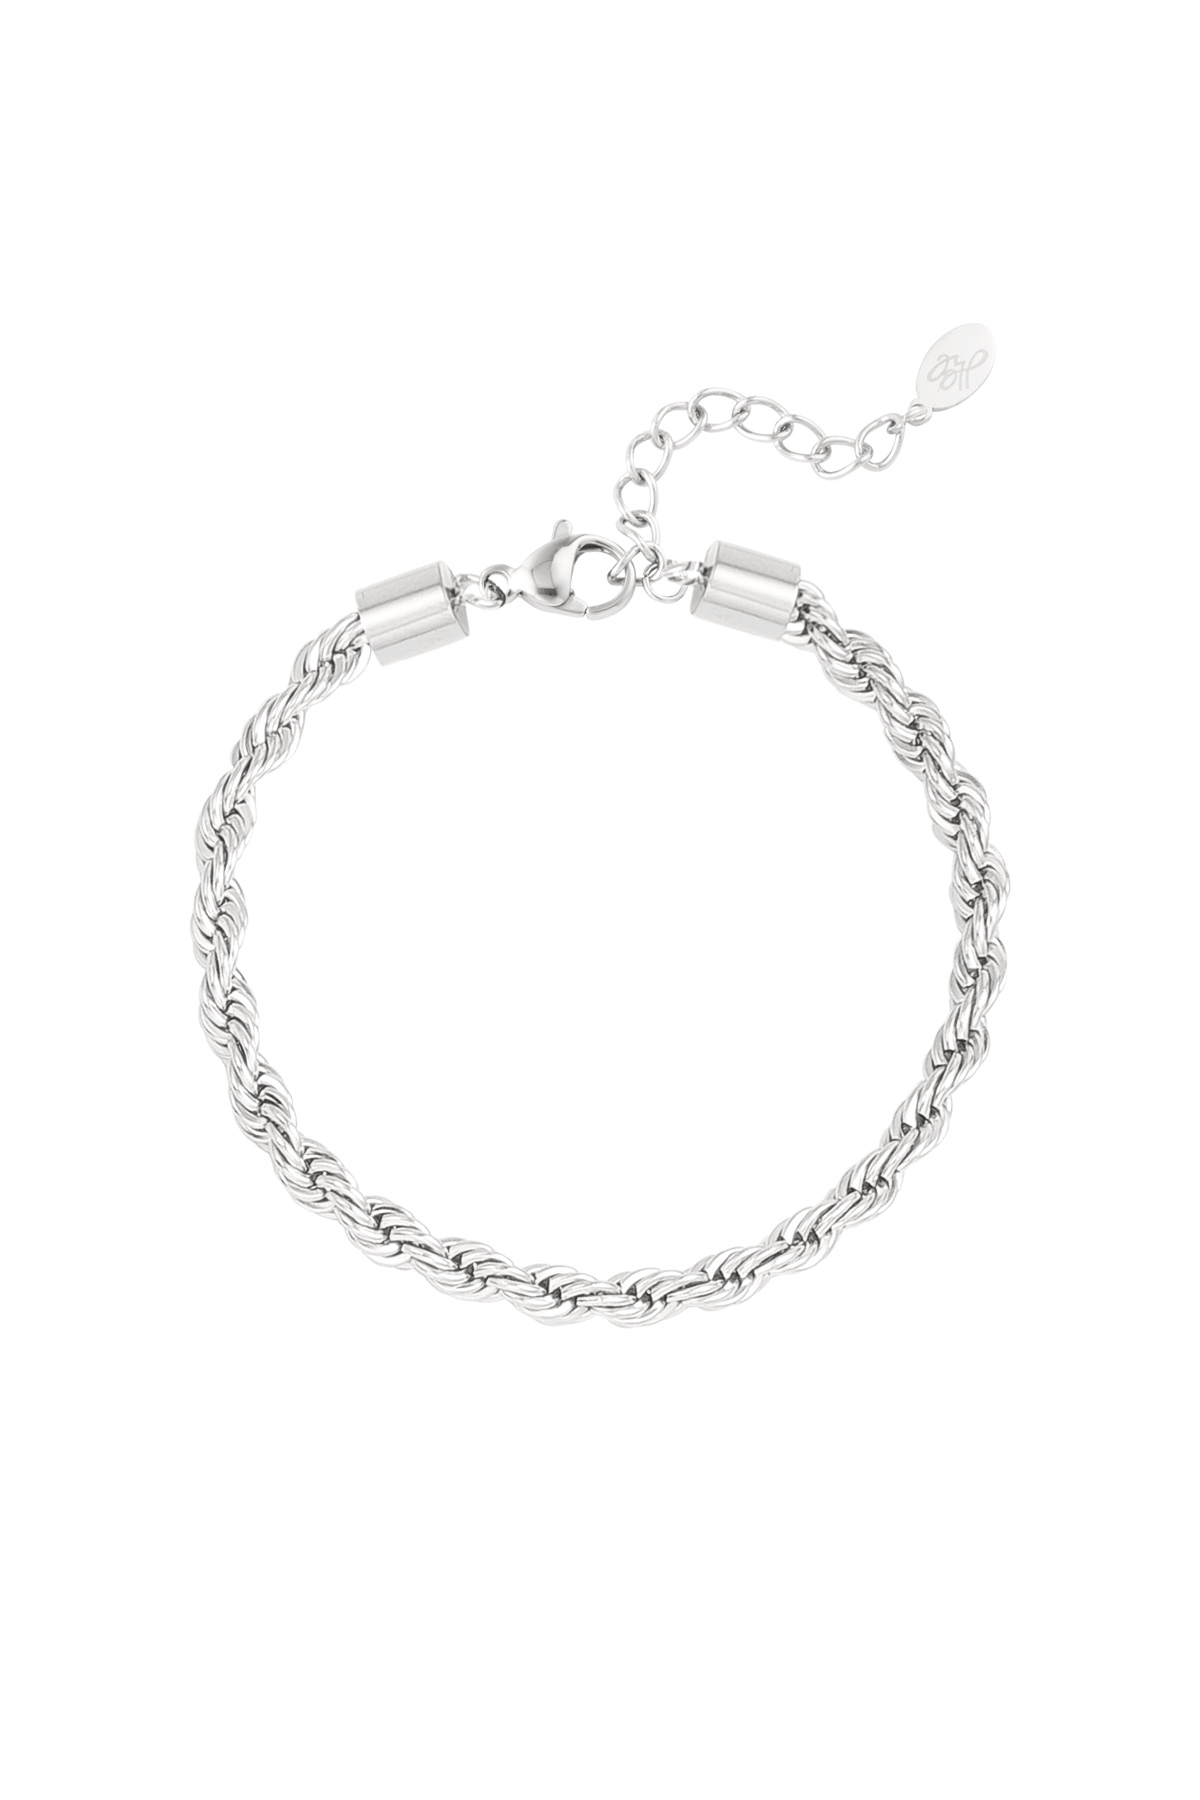 Unisex bracelet twisted coarse - silver-4.0MM 